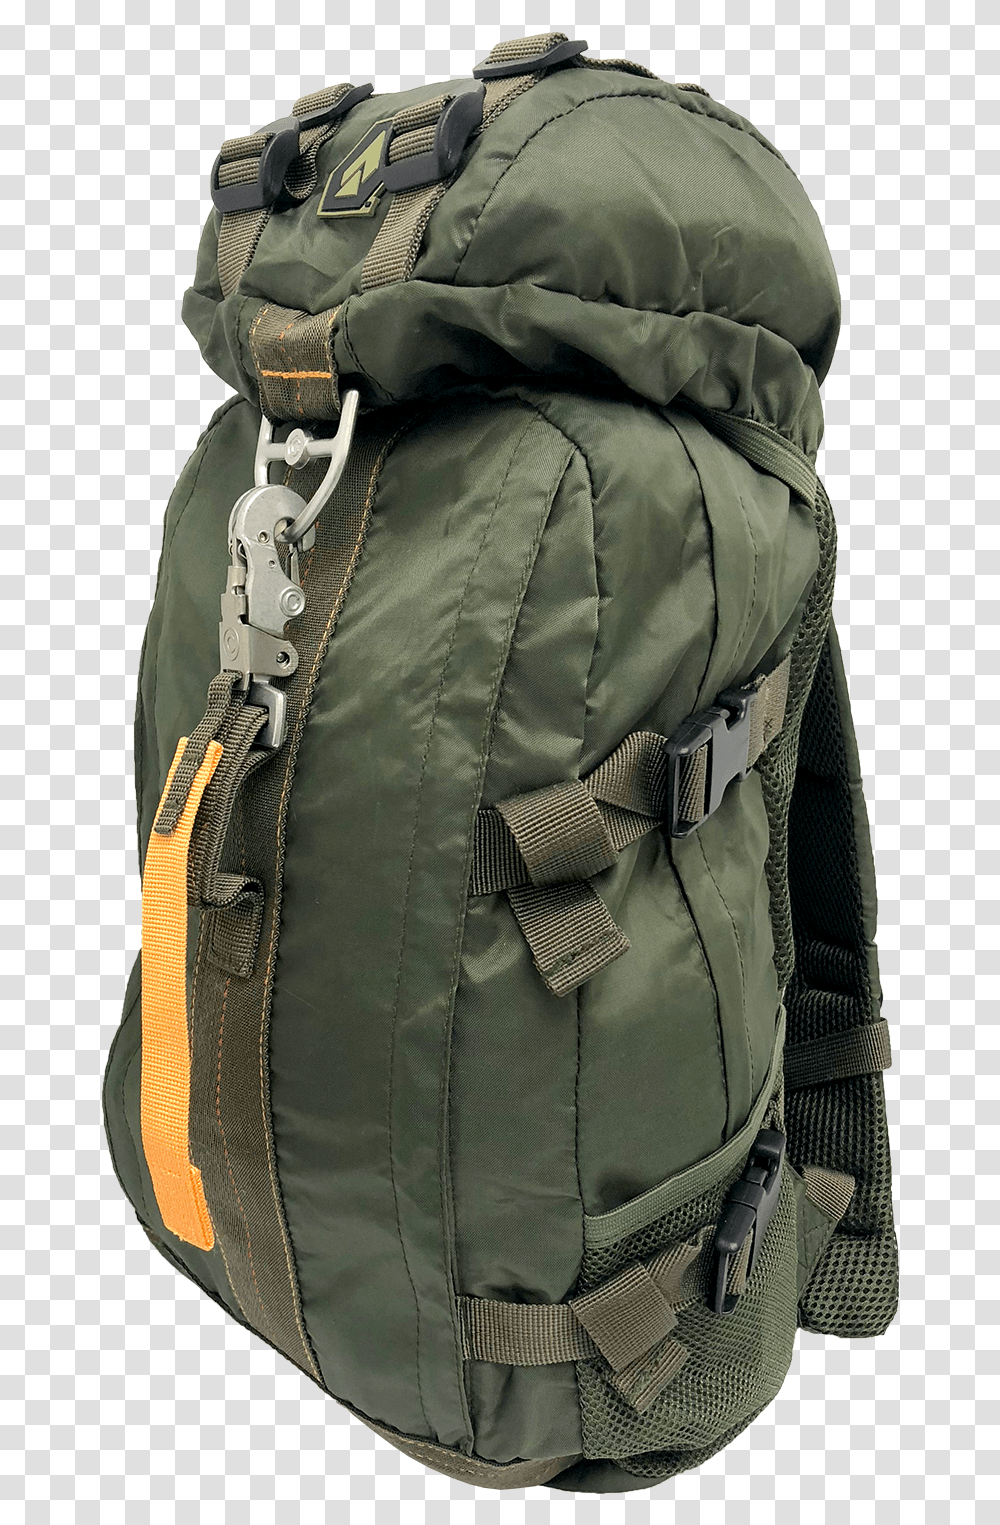 Opsgear Parachute BackpackClass Parachute Bag, Coat, Jacket, Zipper Transparent Png